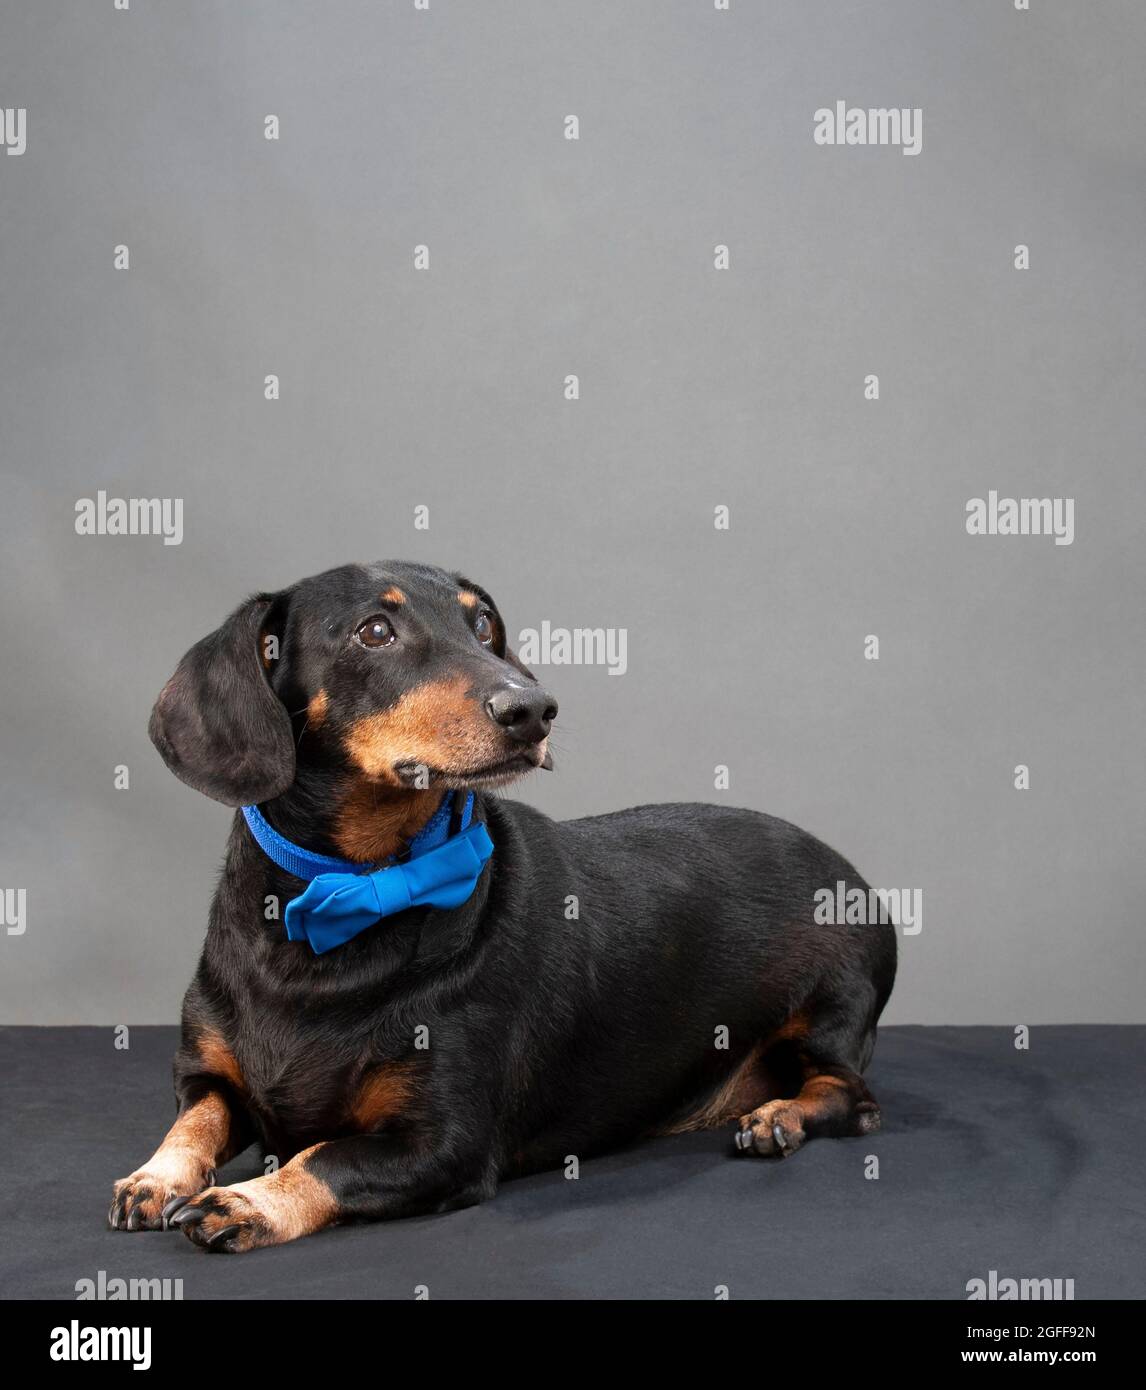 Scatto verticale di un dachshund nero e rosso seduto che indossa un bow tie blu su uno sfondo grigio con copyspace. Foto Stock